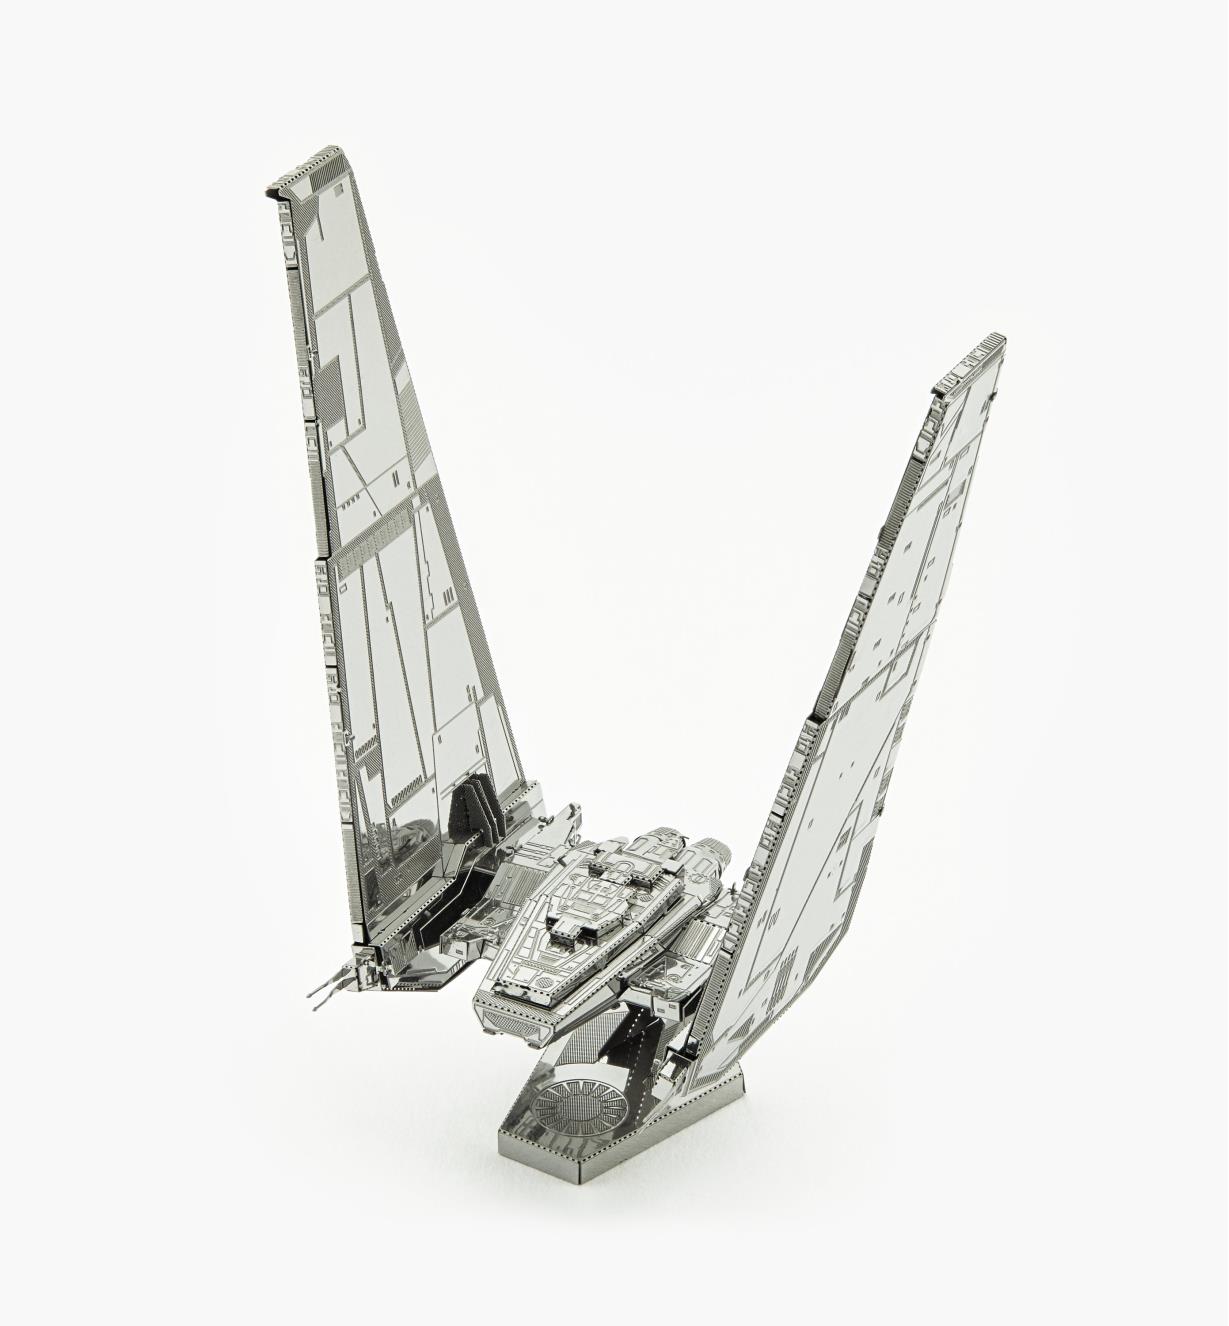 45K4120 - Star Wars: The Force Awakens Metal Model Kit -Kylo Ren's Command Shuttle